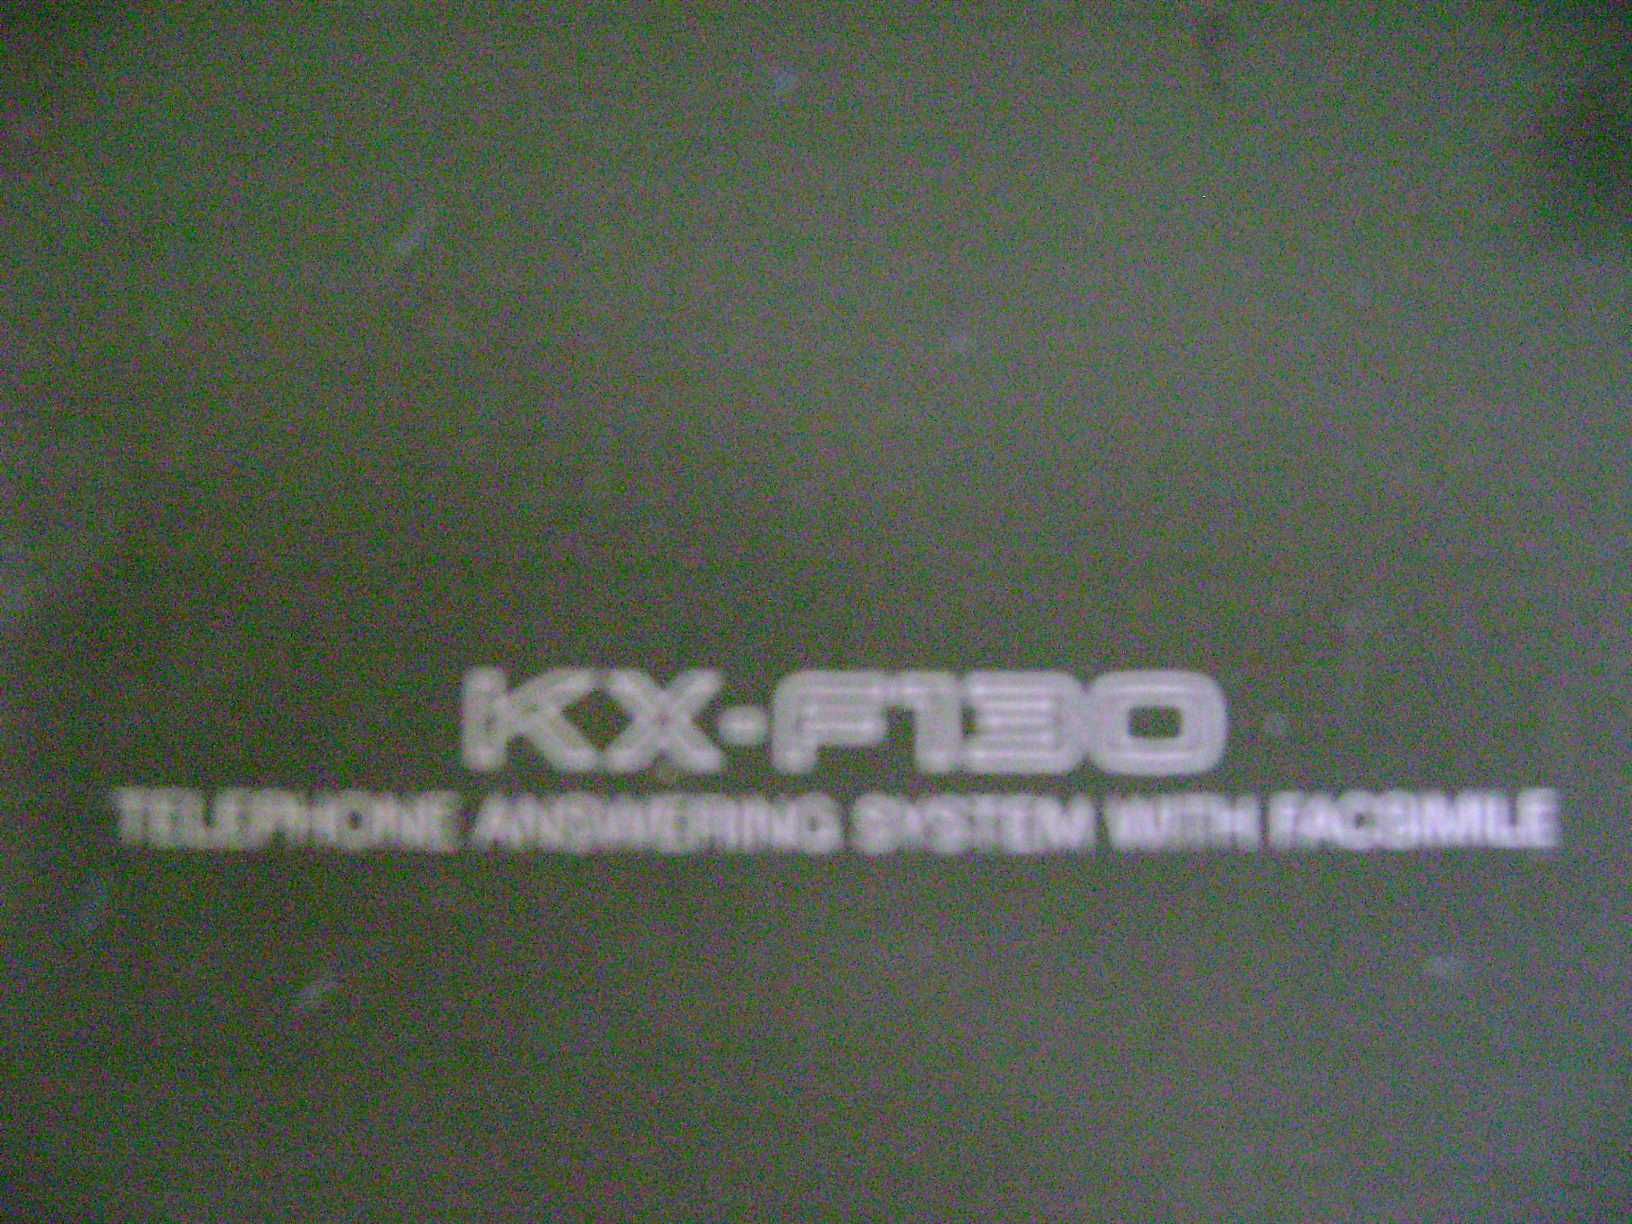 fax panasonik kx f130